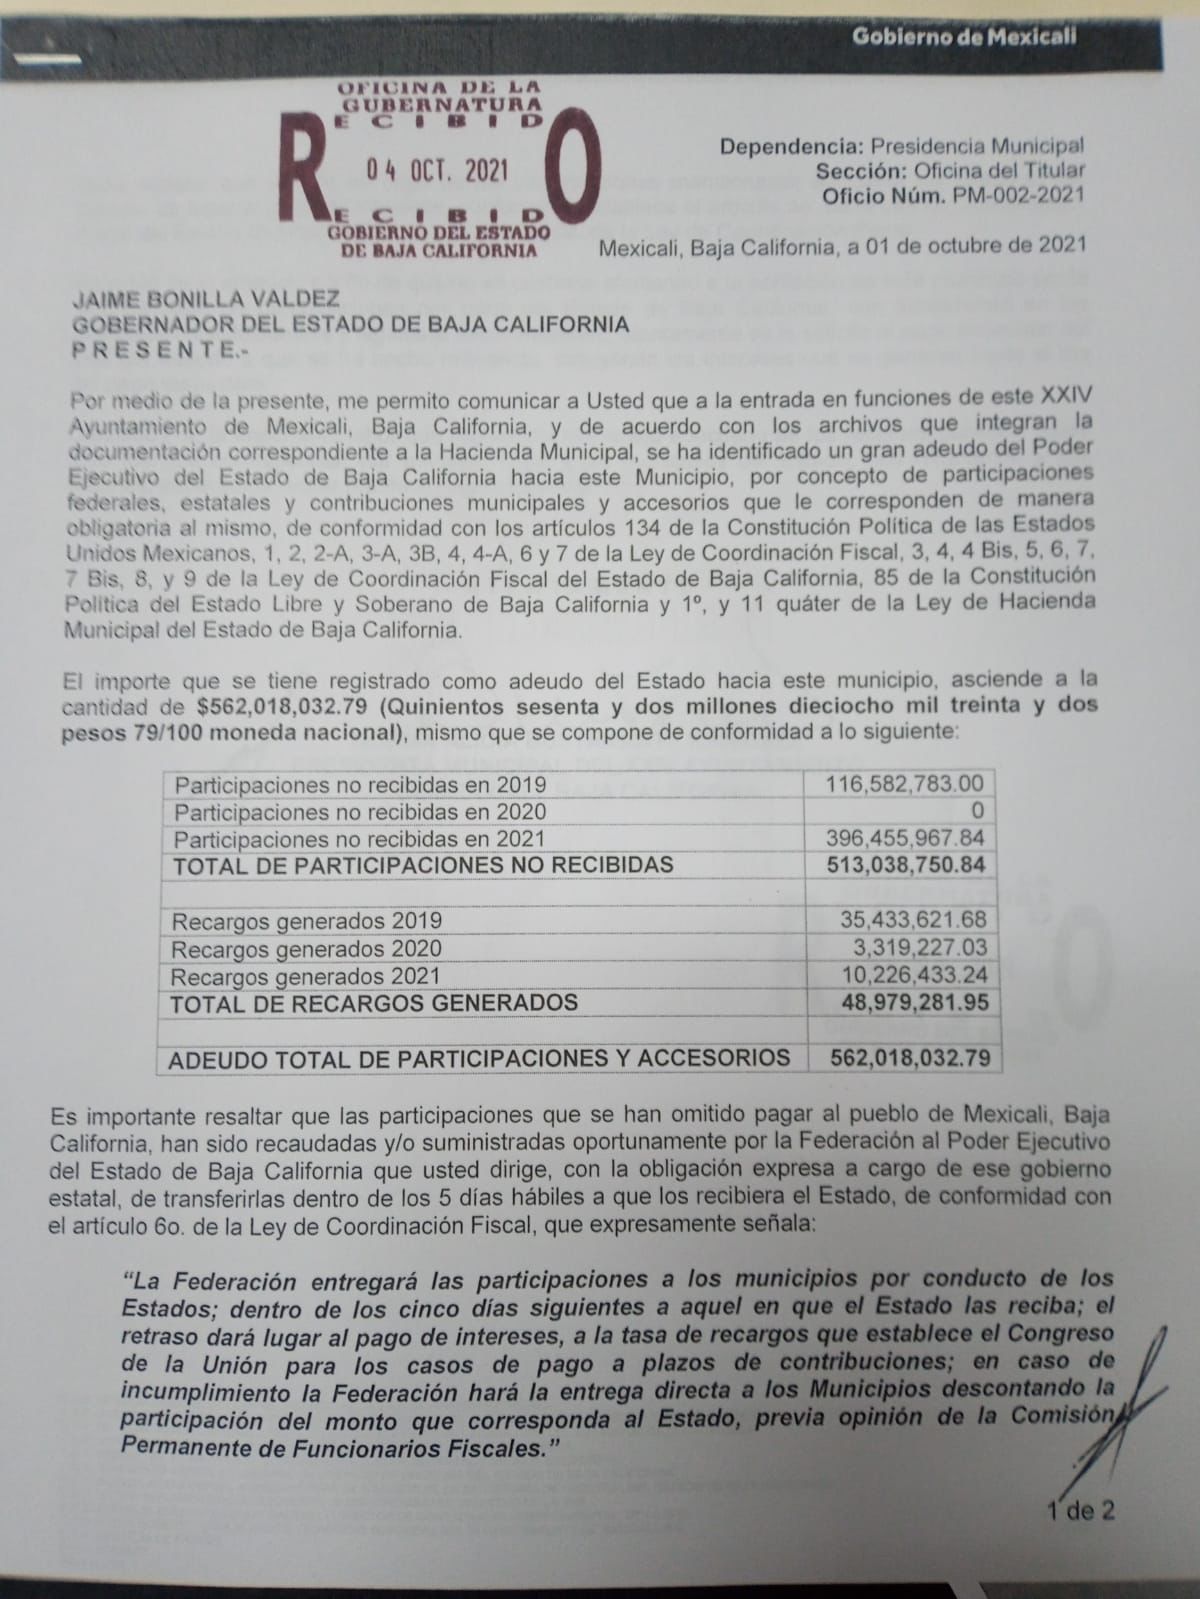 Exige alcaldesa de Mexicali a Bonilla «pago inmediato» de 562 mdp de participaciones federales